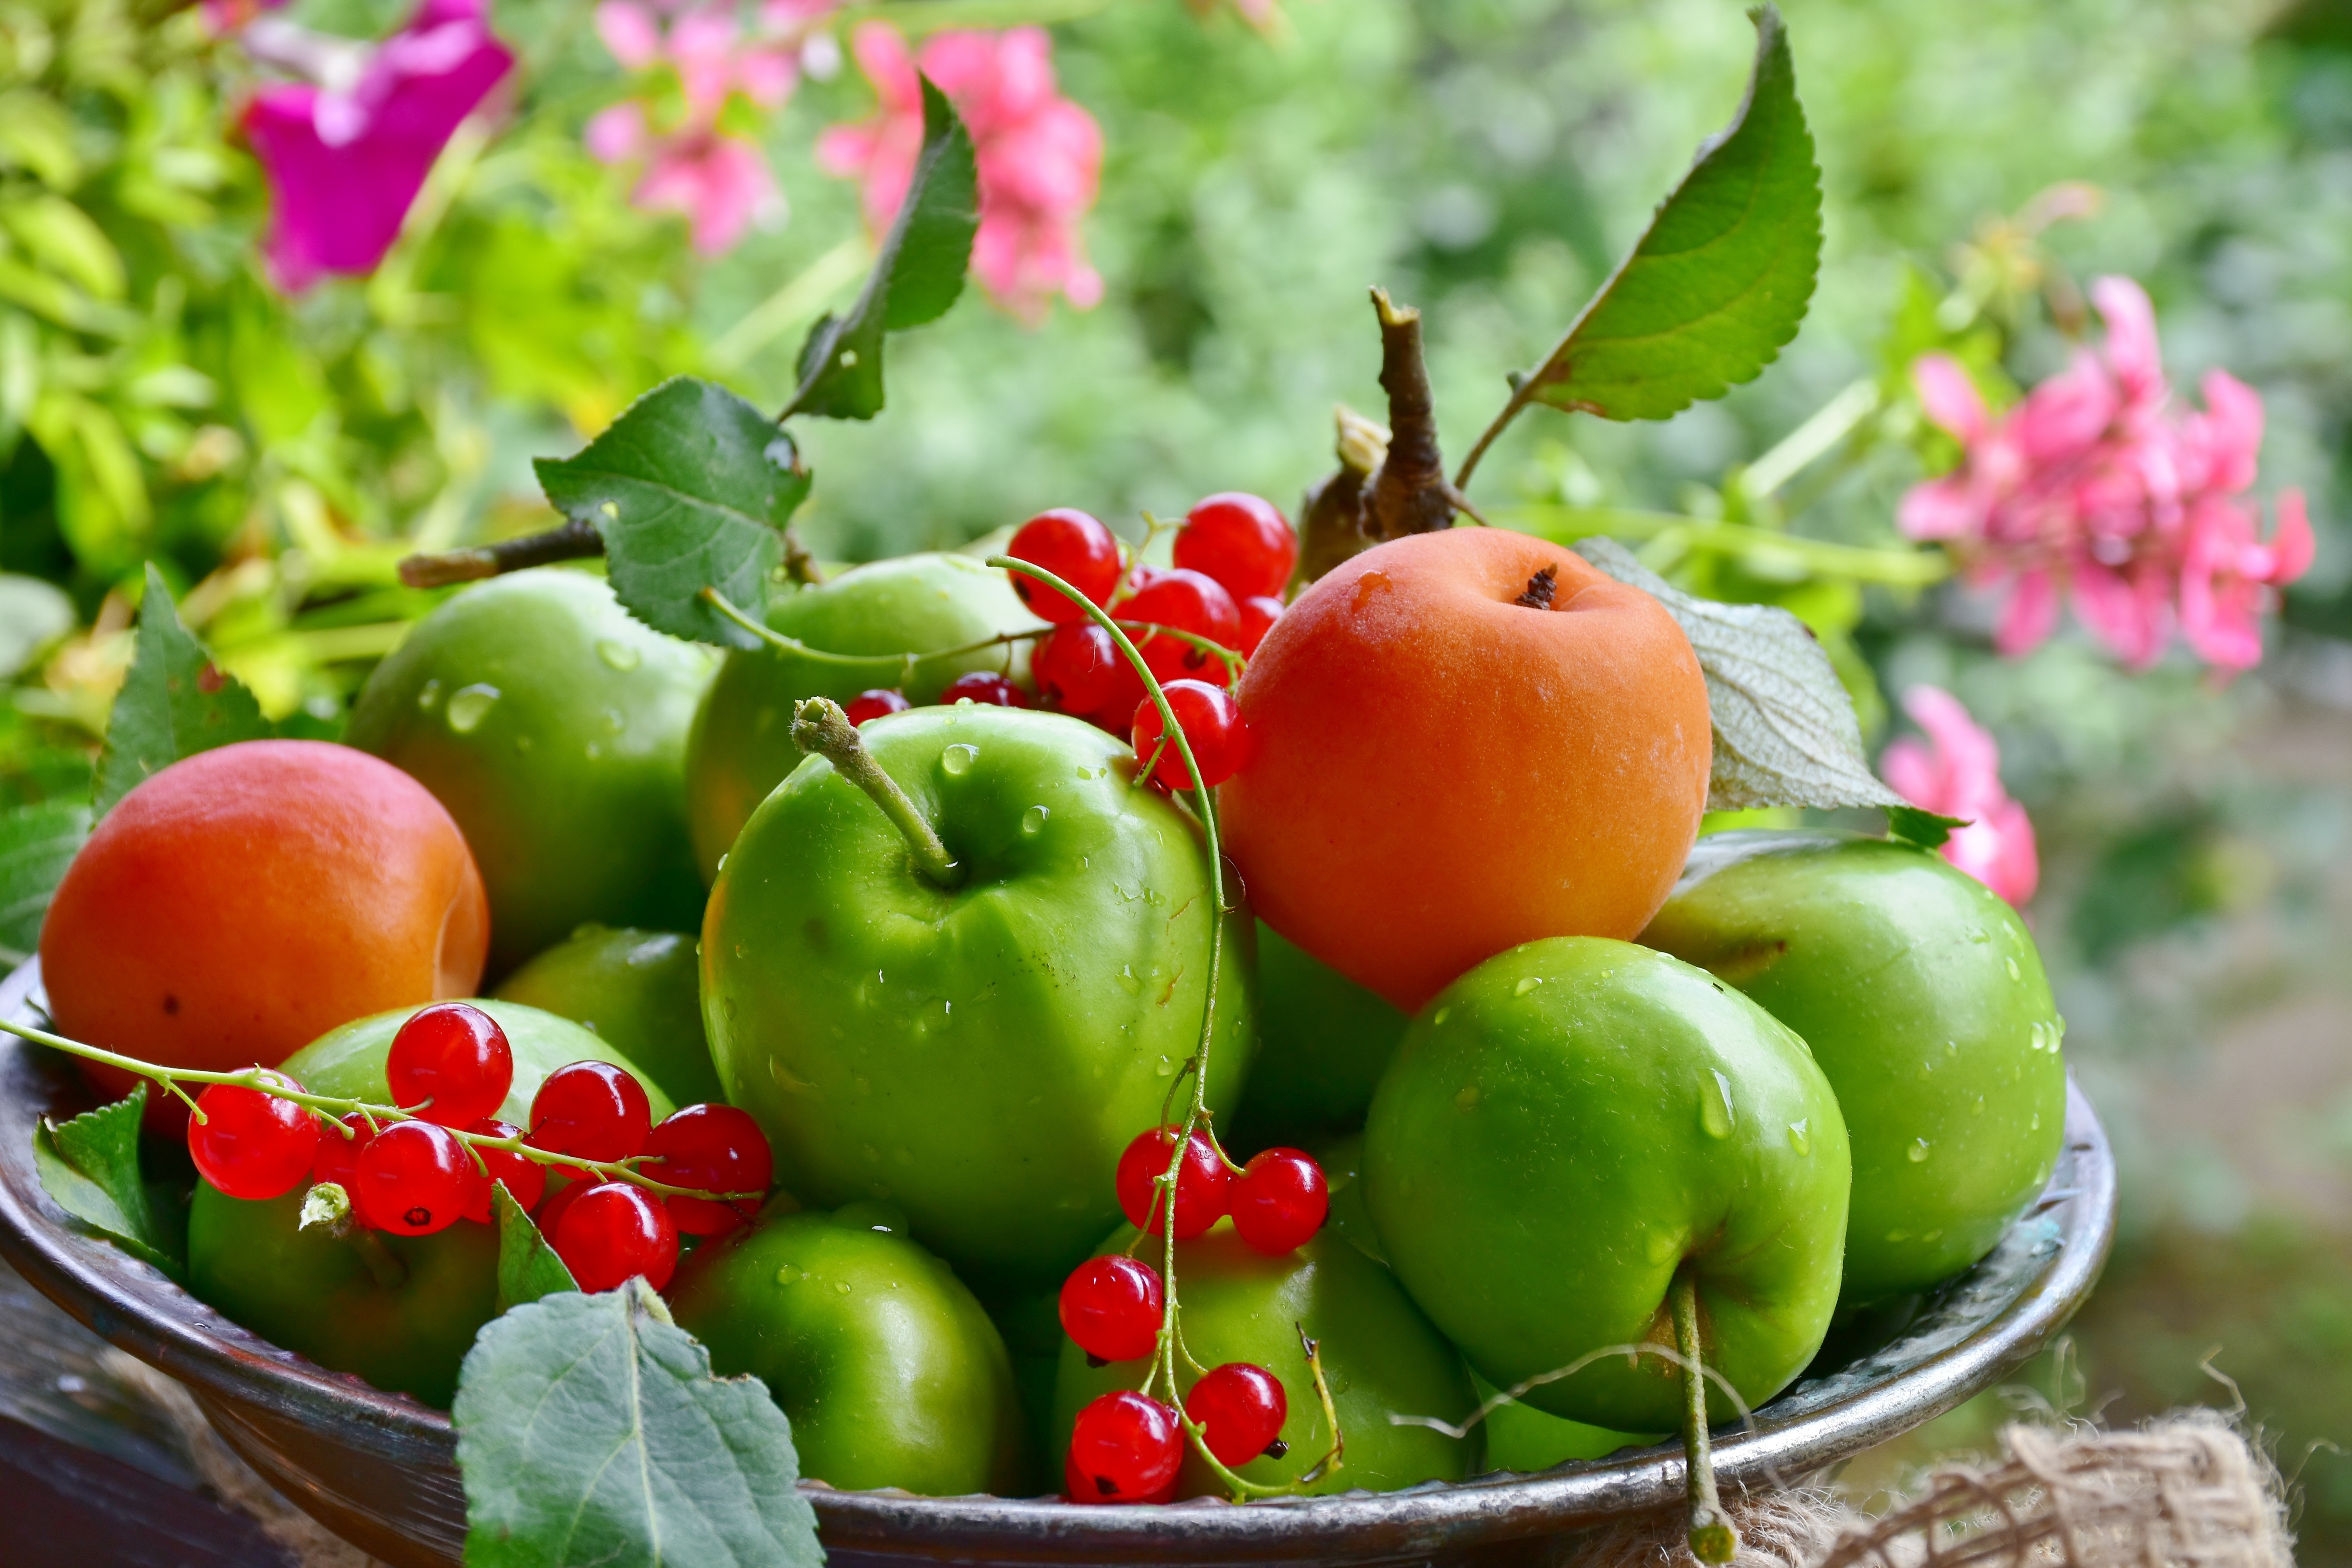 Фото фрукты и овощи высокого качества